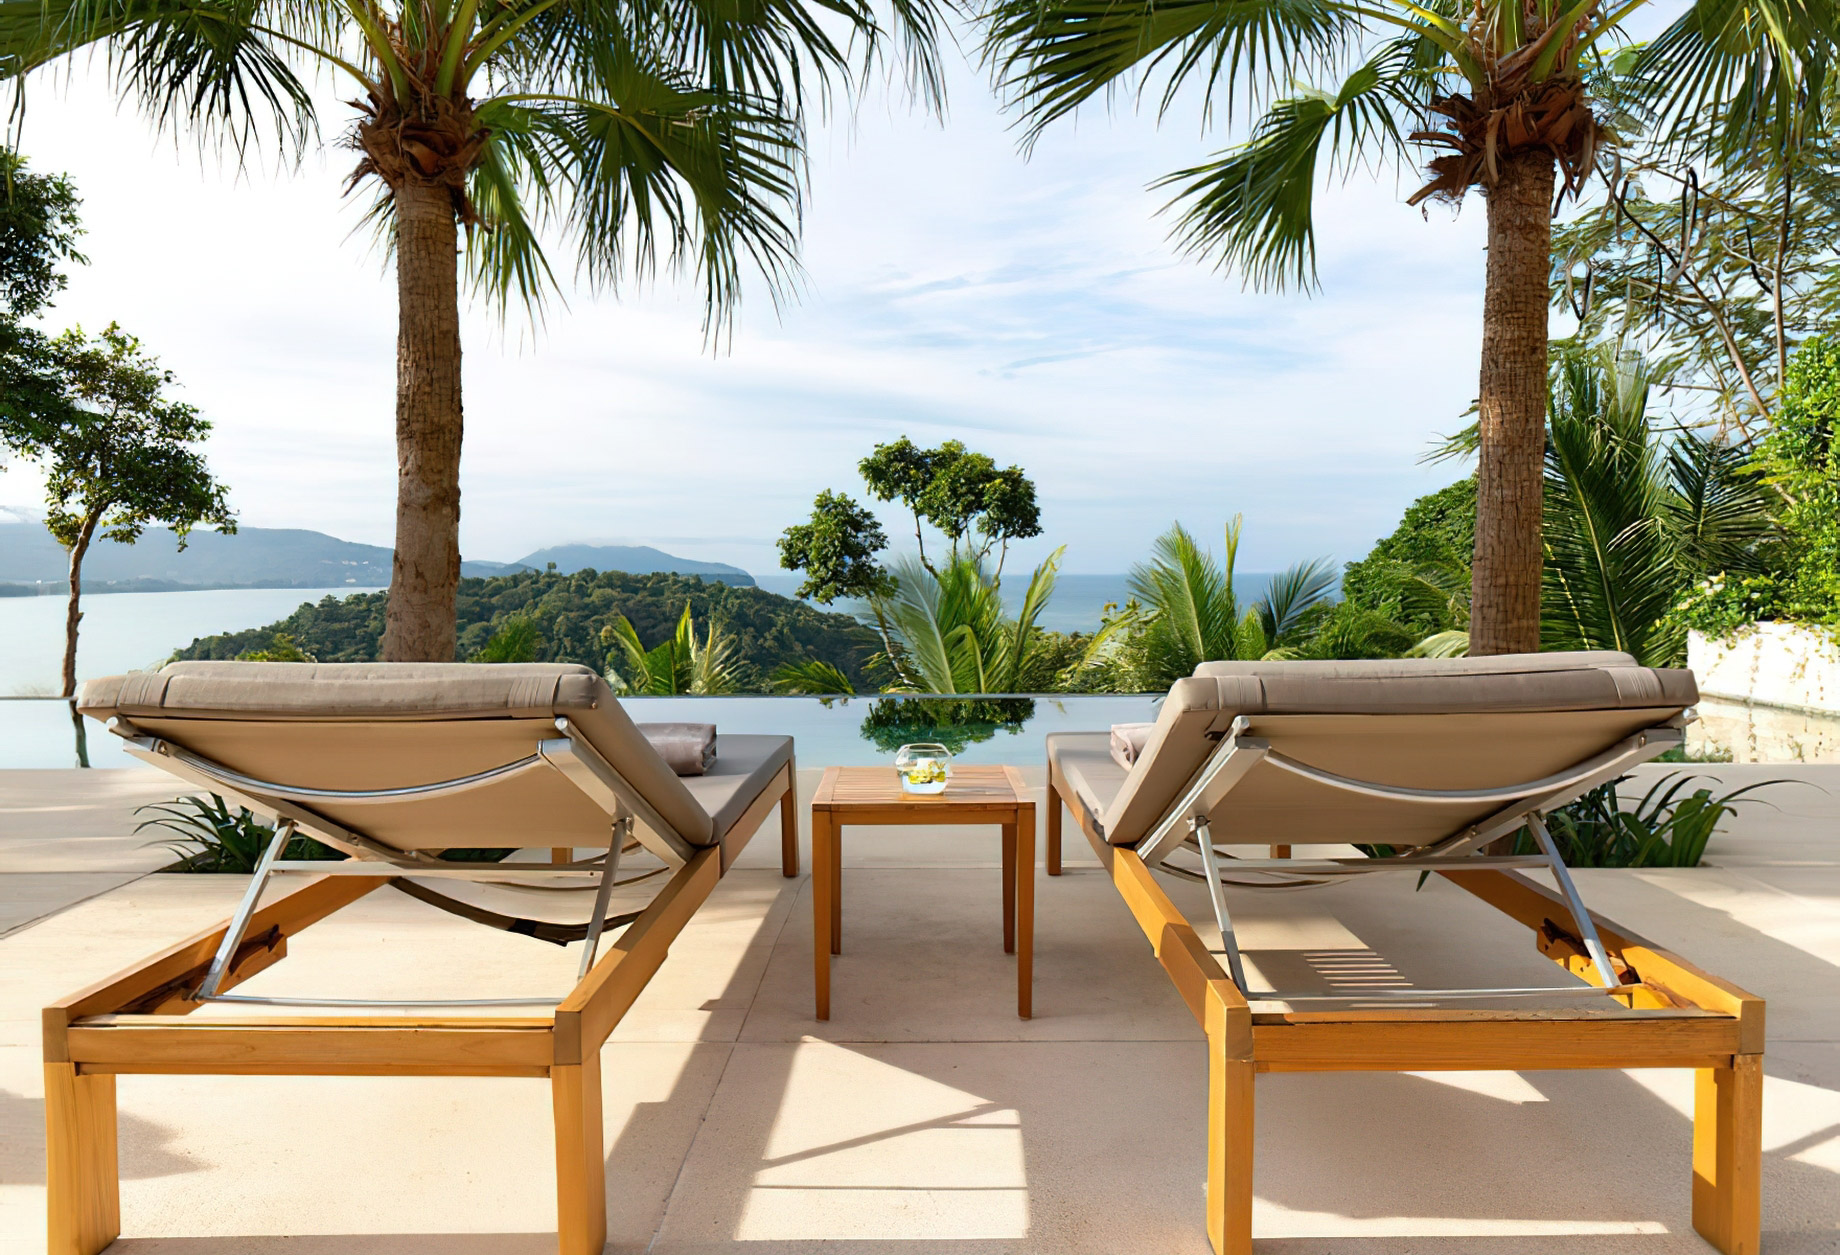 Anantara Layan Phuket Resort & Residences – Thailand – Residence Pool Deck Terrace View